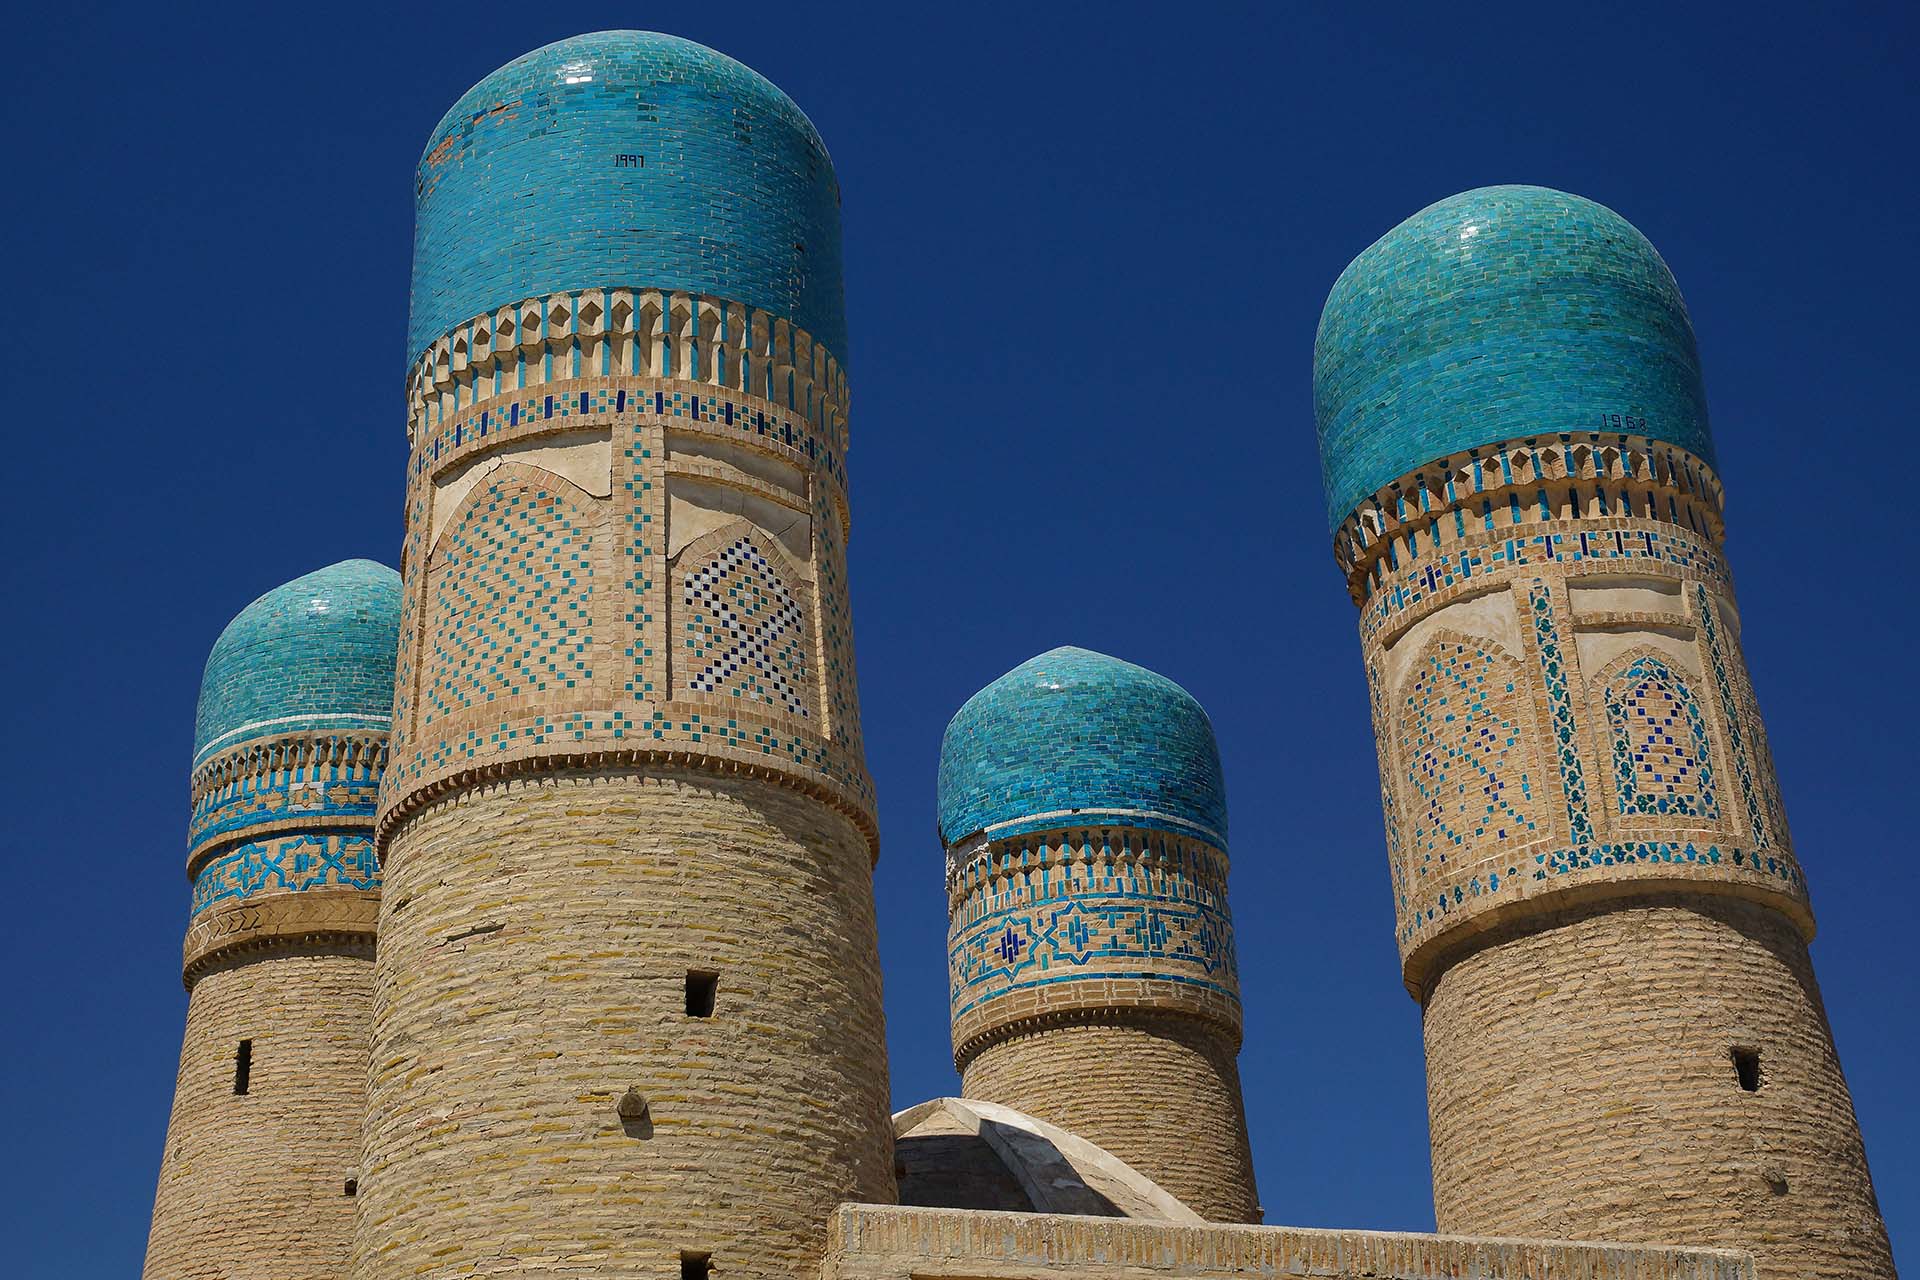 Reis Oezbekistan: route langs de mooiste bezienswaardigheden